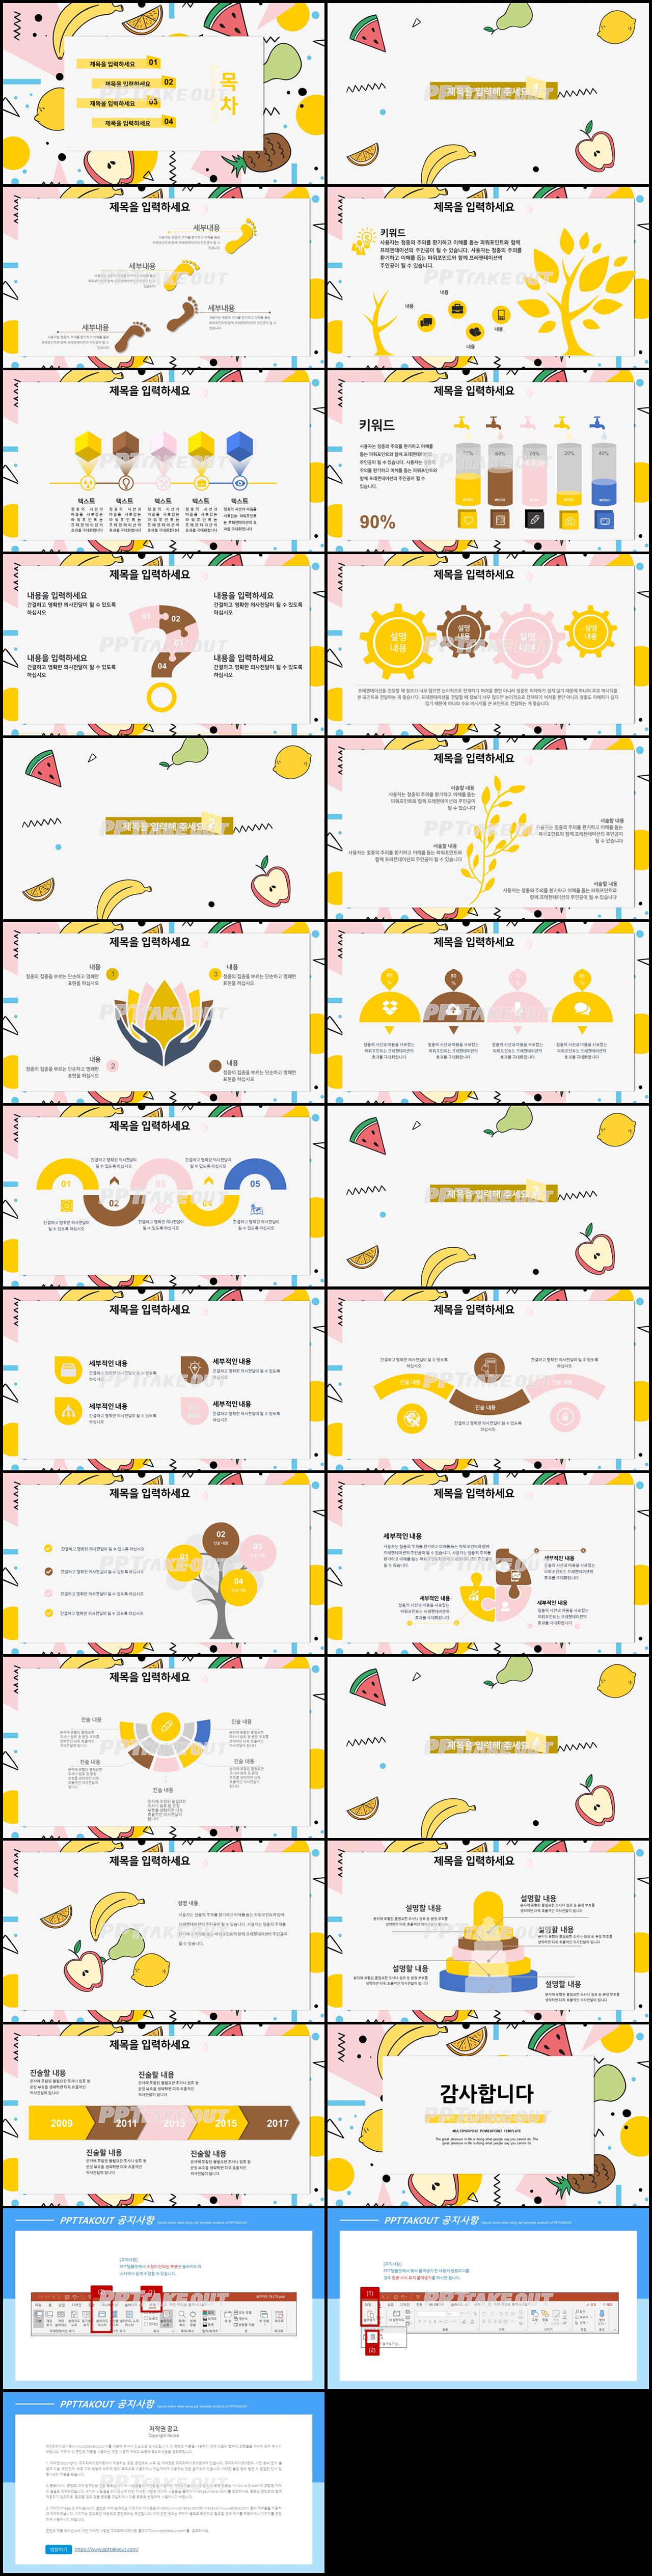 가정교육 옐로우 만화느낌 맞춤형 PPT탬플릿 다운로드 상세보기